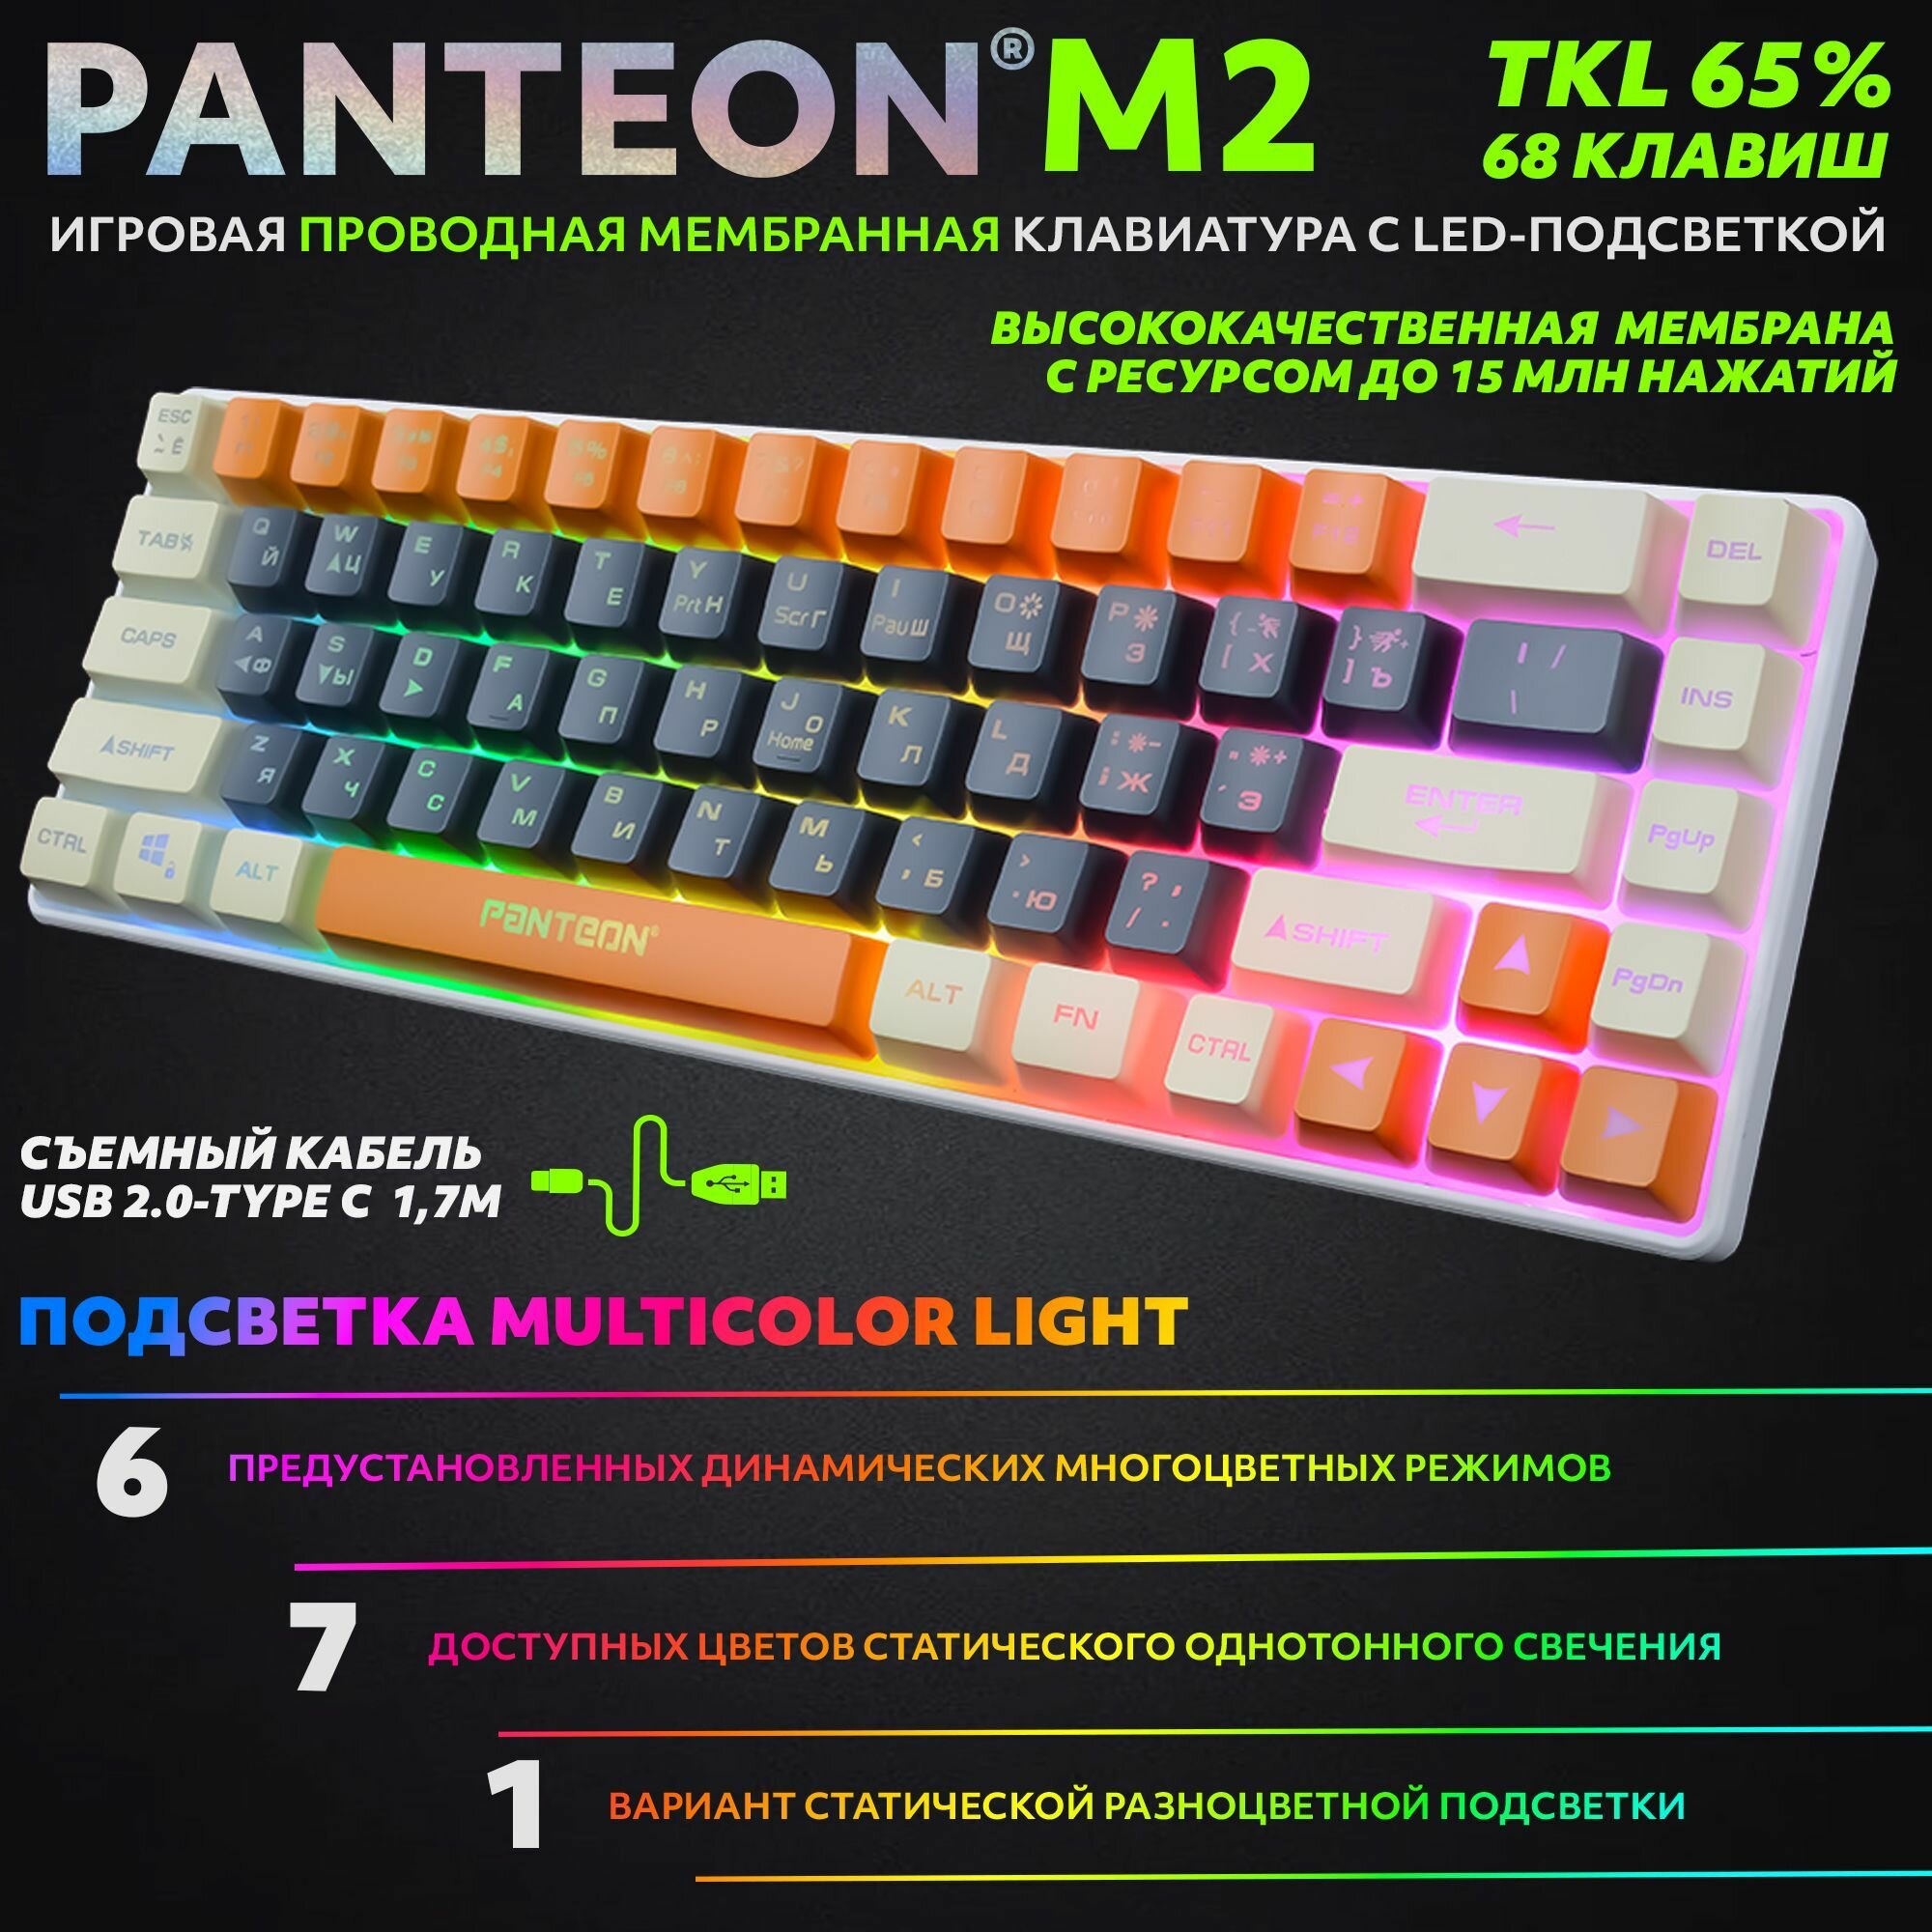 PANTEON M2 Grey-Ivory(02) Игровая мембранная TKL (65%) клавиатура с LED-подсветкой MULTICOLOR (68 кл, USB), цвет: серый-слоновая кость (02)